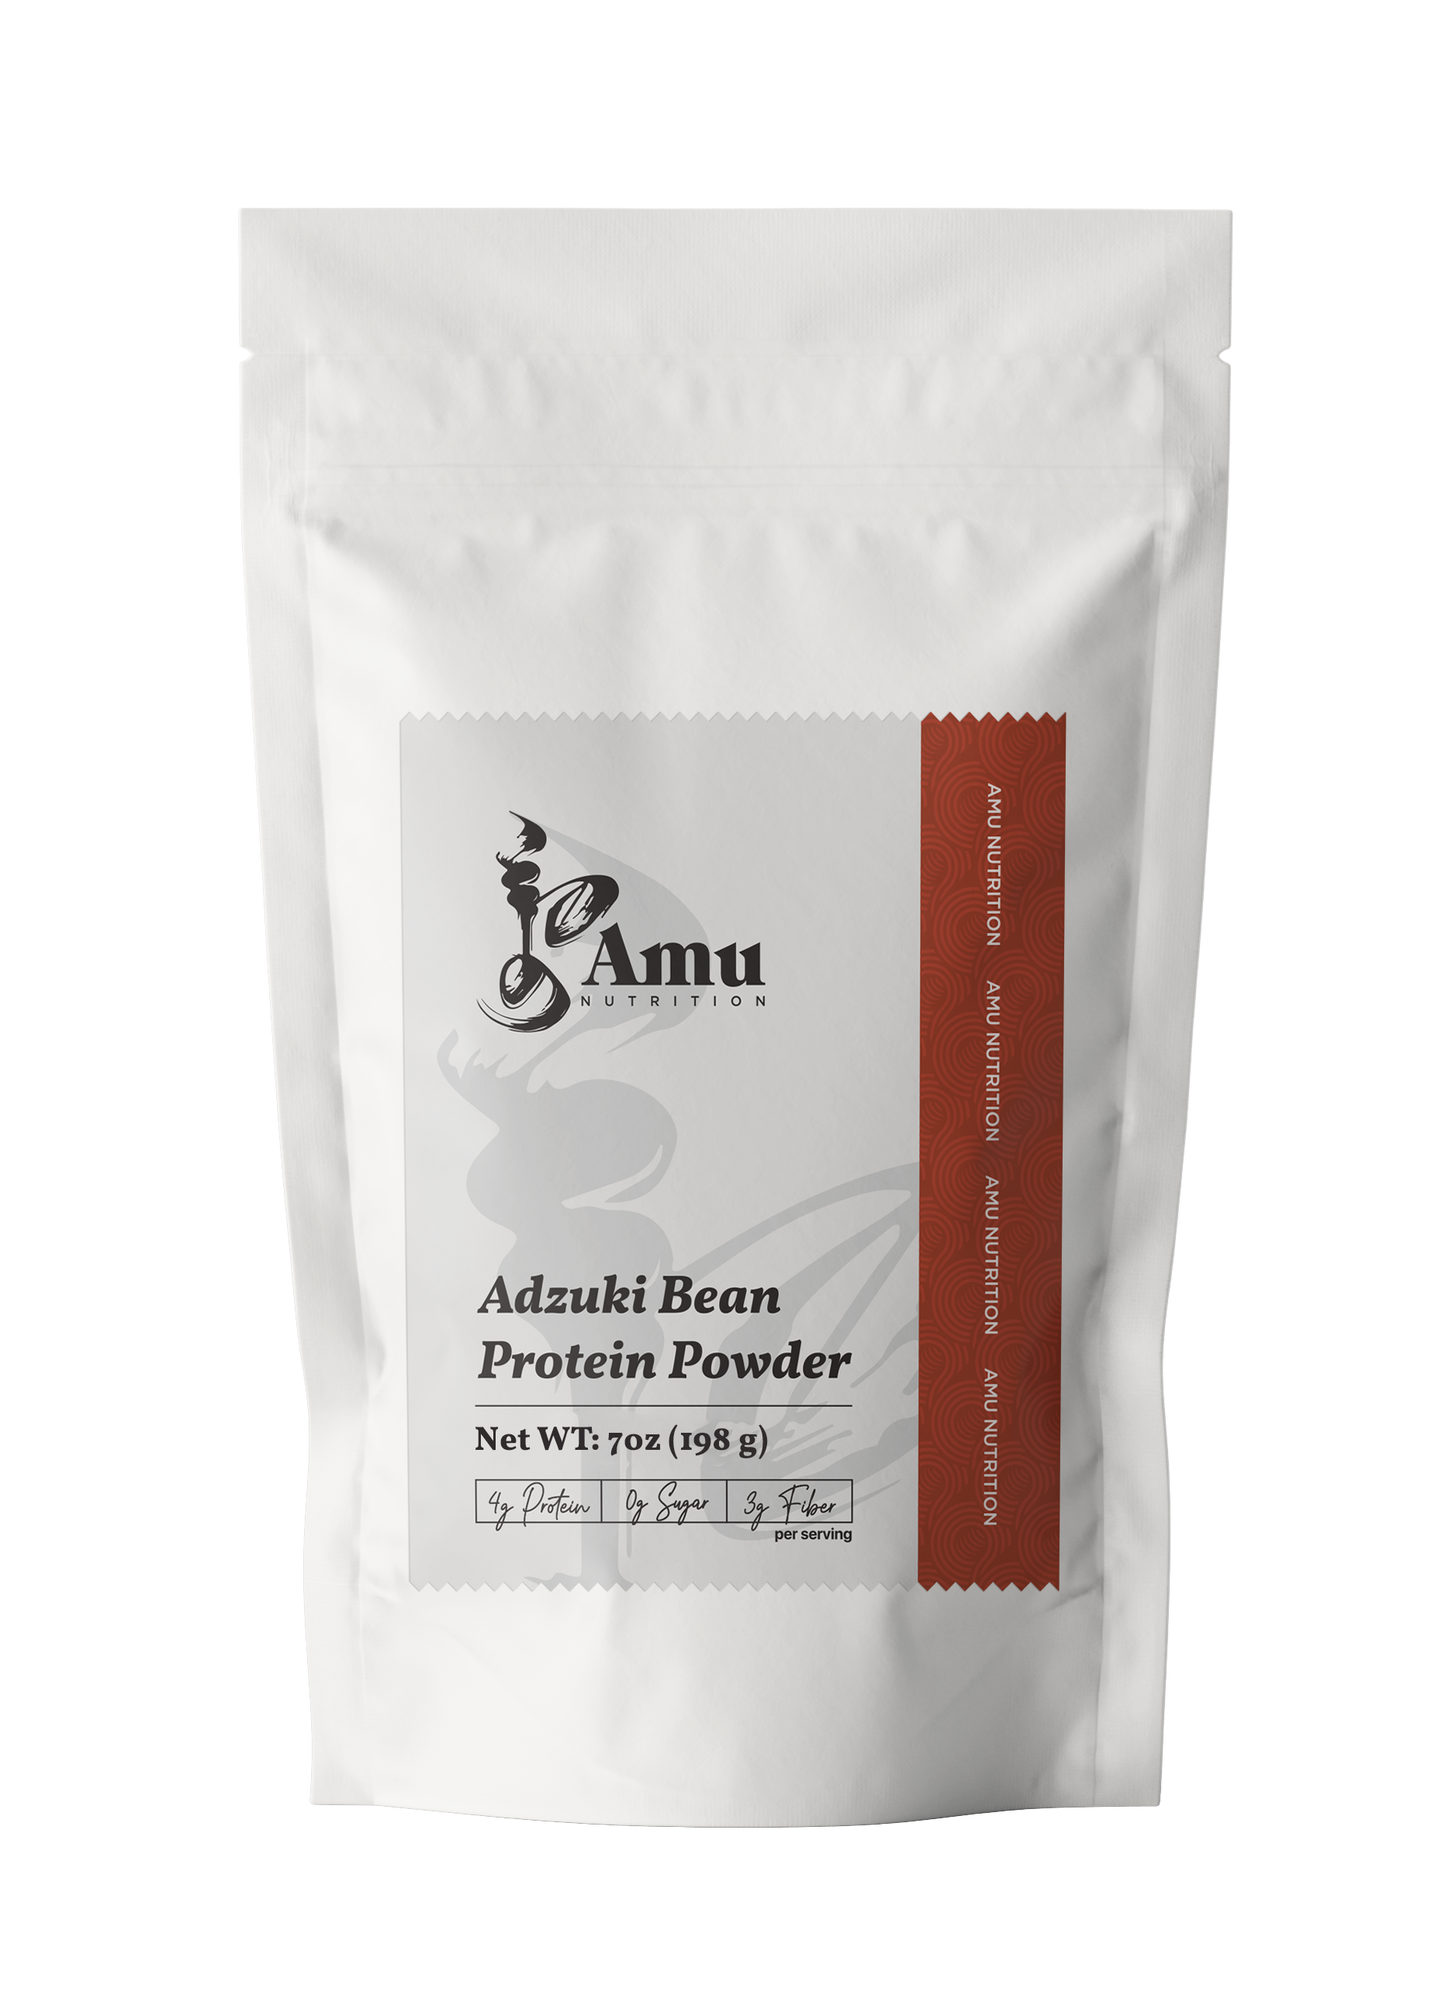 Roasted Adzuki bean powder